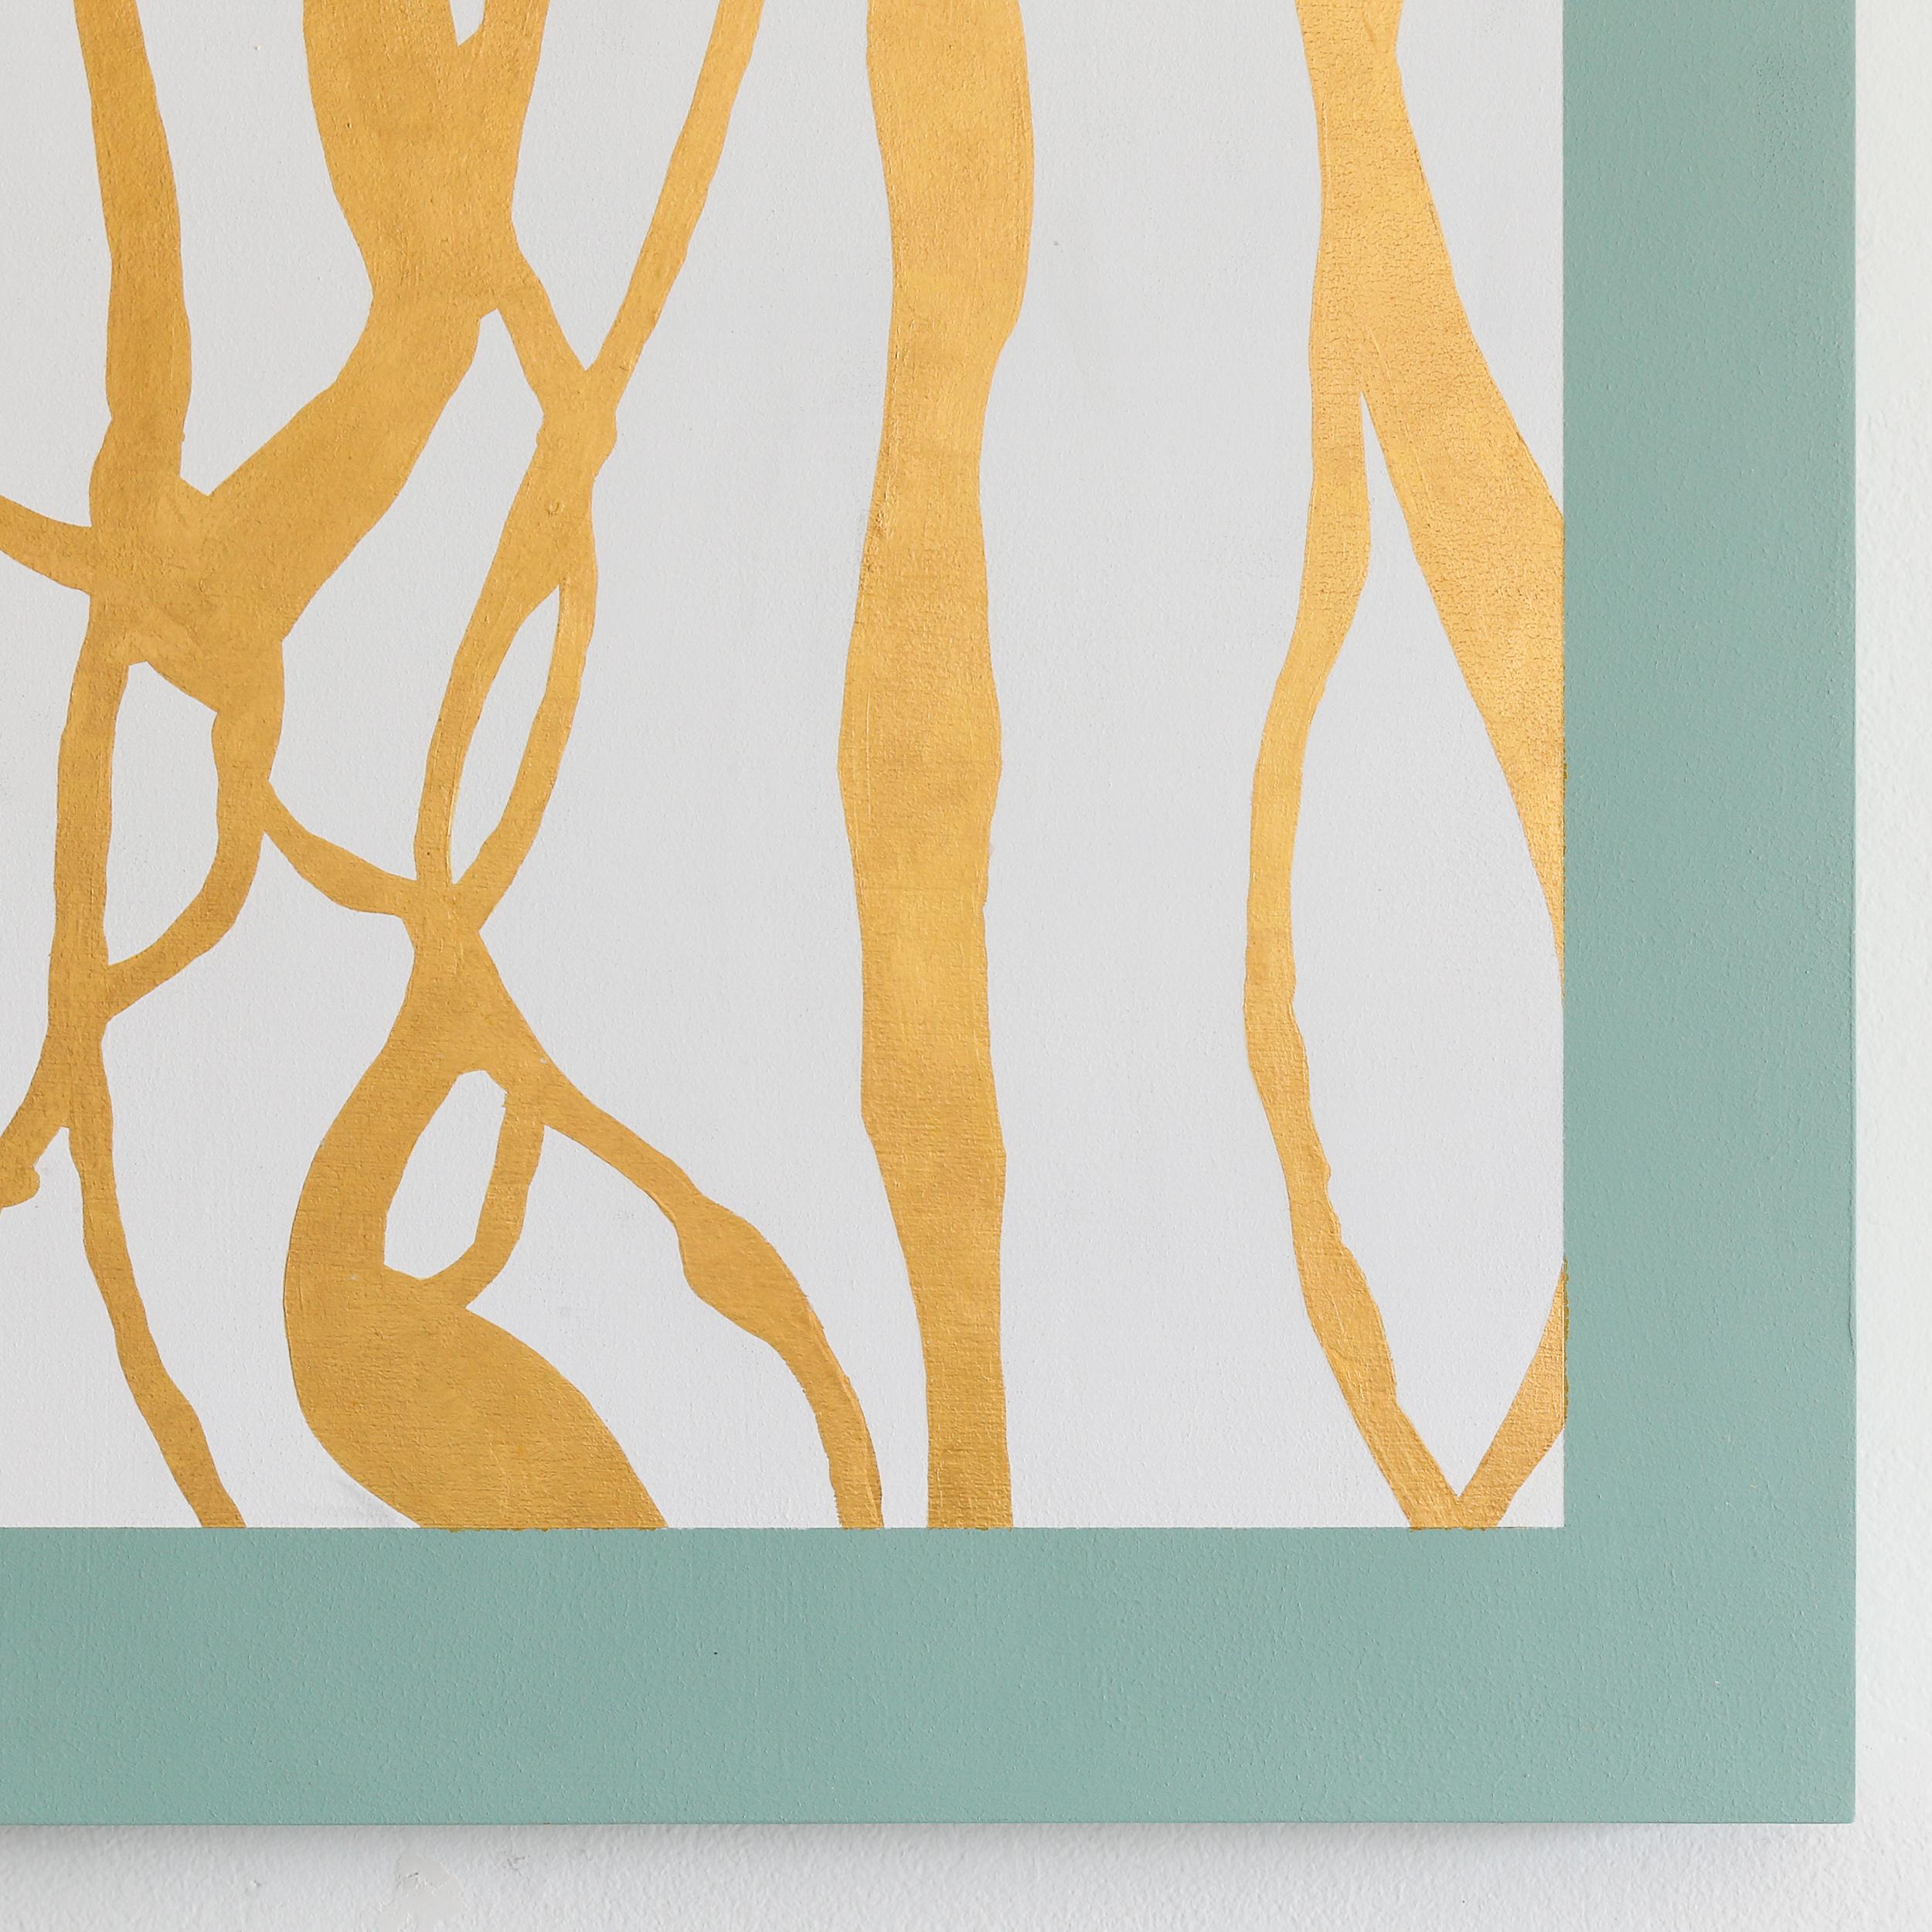 JESSICA FELDHEIM
Cette œuvre d'art moderne minimaliste utilise la feuille d'or, le blanc et des tons verts doux. 
Bleu Covington avec feuille d'or pur 24k 
Technique mixte sur panneau
30.00w x 30.00h x 1.50d in
$3,800.00